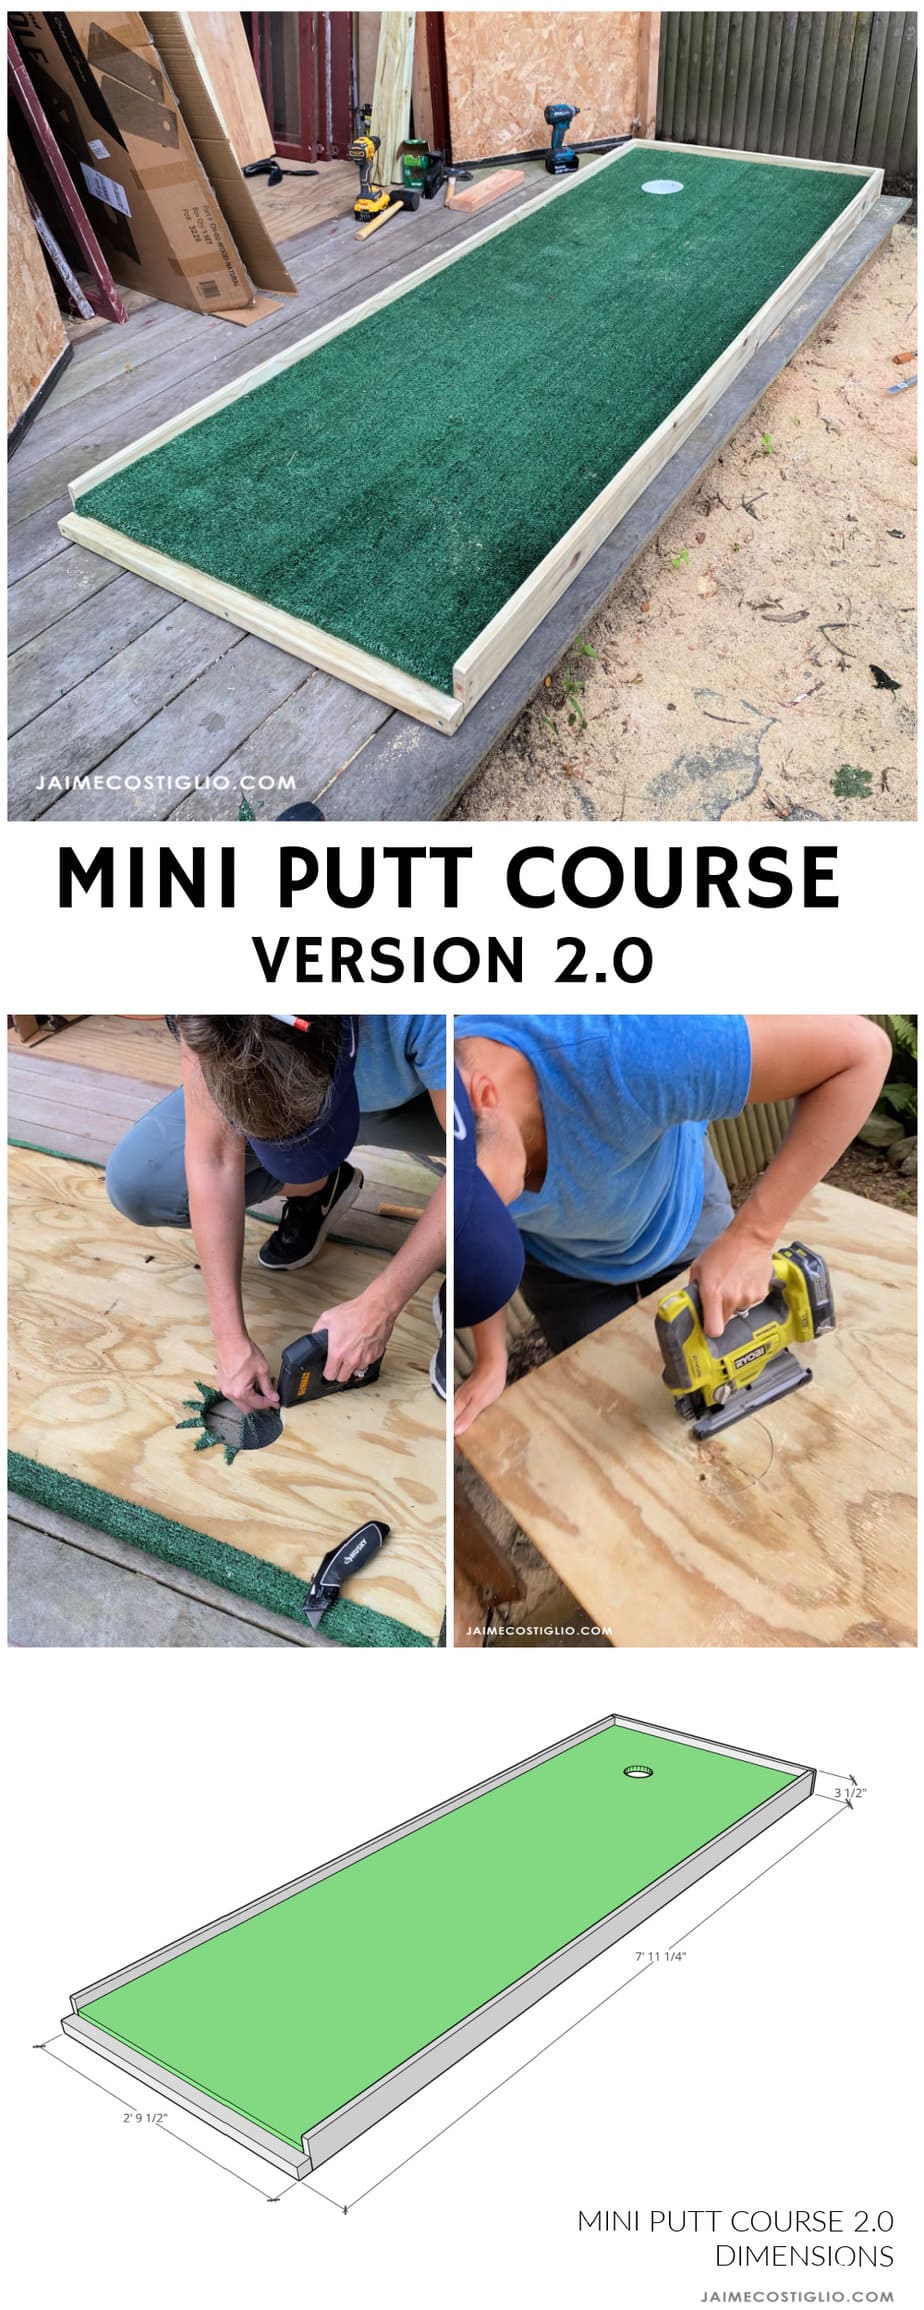 diy mini putt course version 2.0 plans